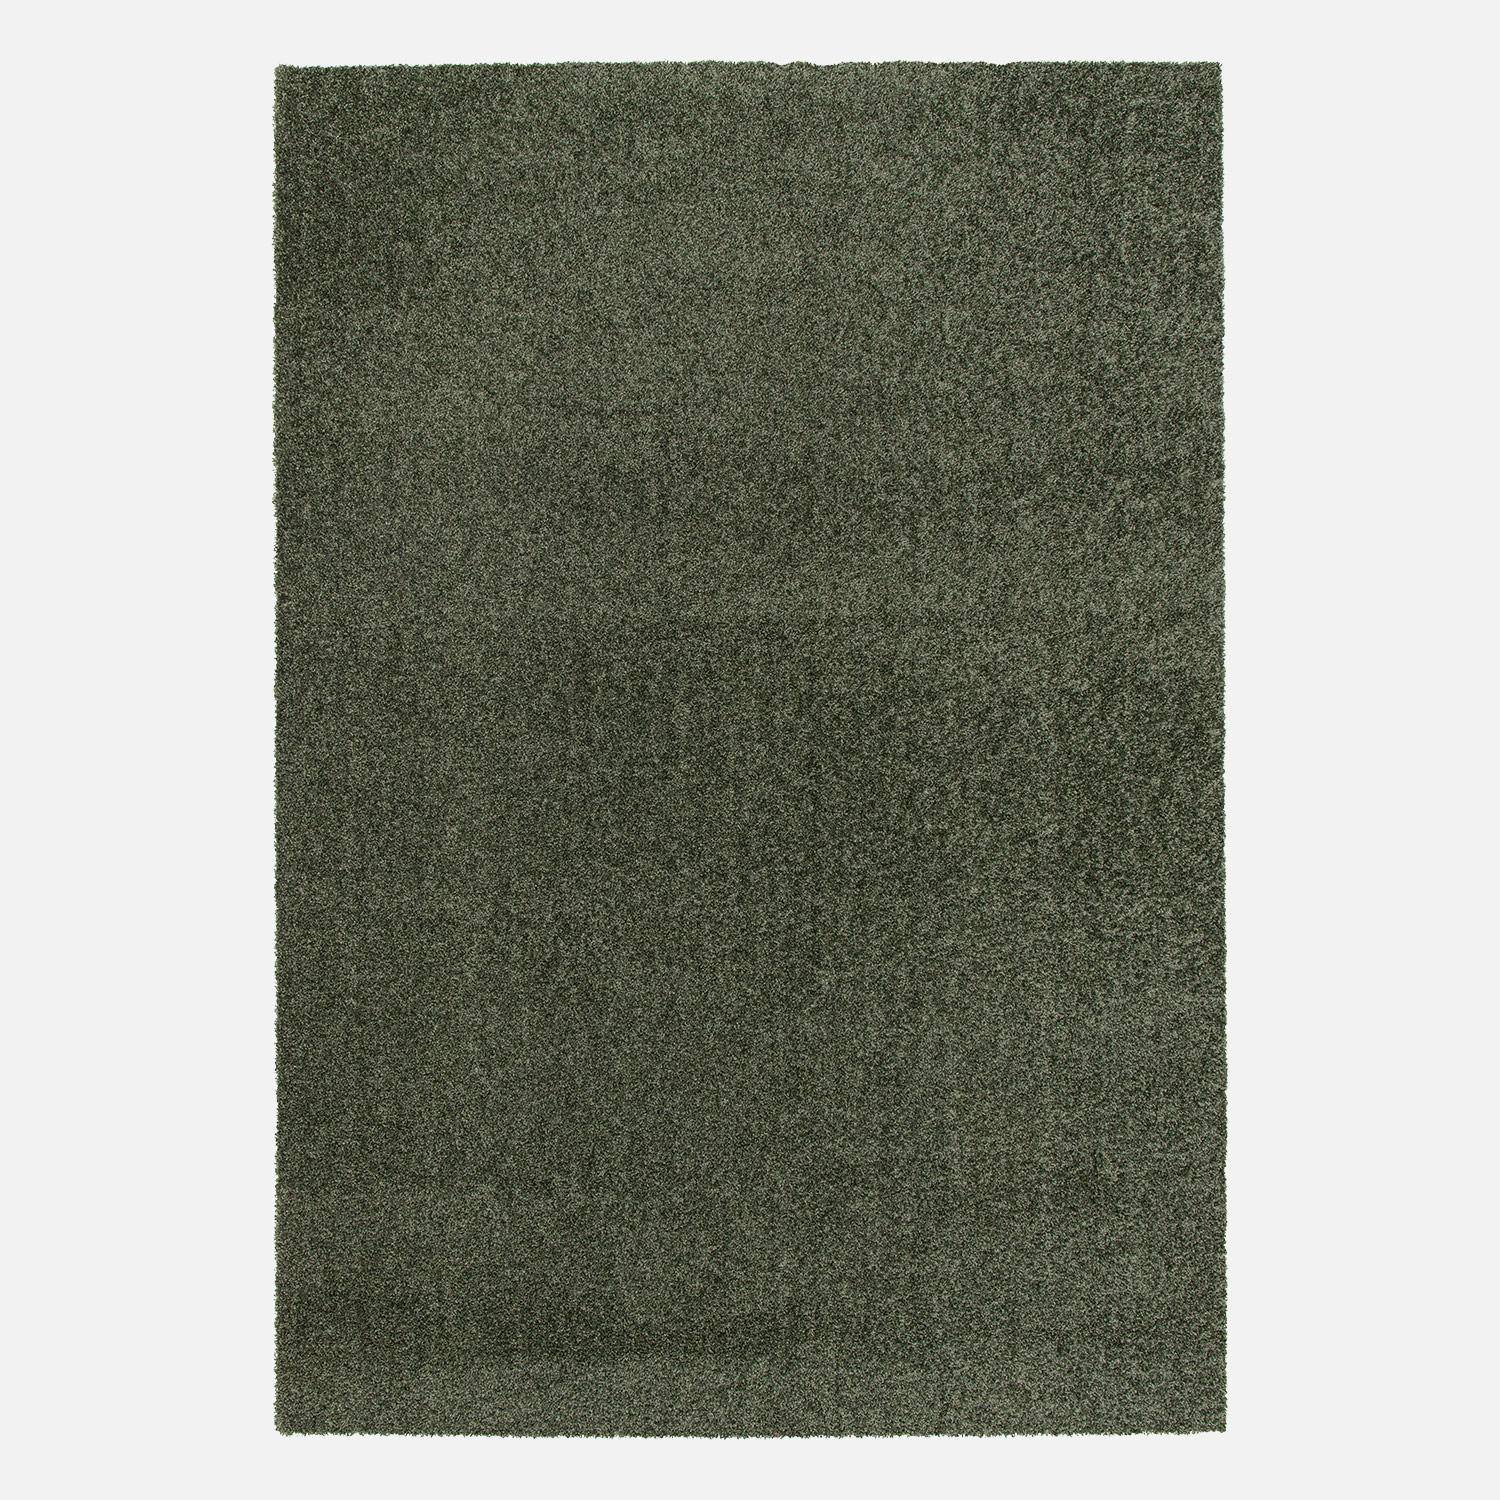 Tappeto per interni in velluto riccio verde scuro, 120x170cm, a pelo corto con effetto pelo ad anello,sweeek,Photo4